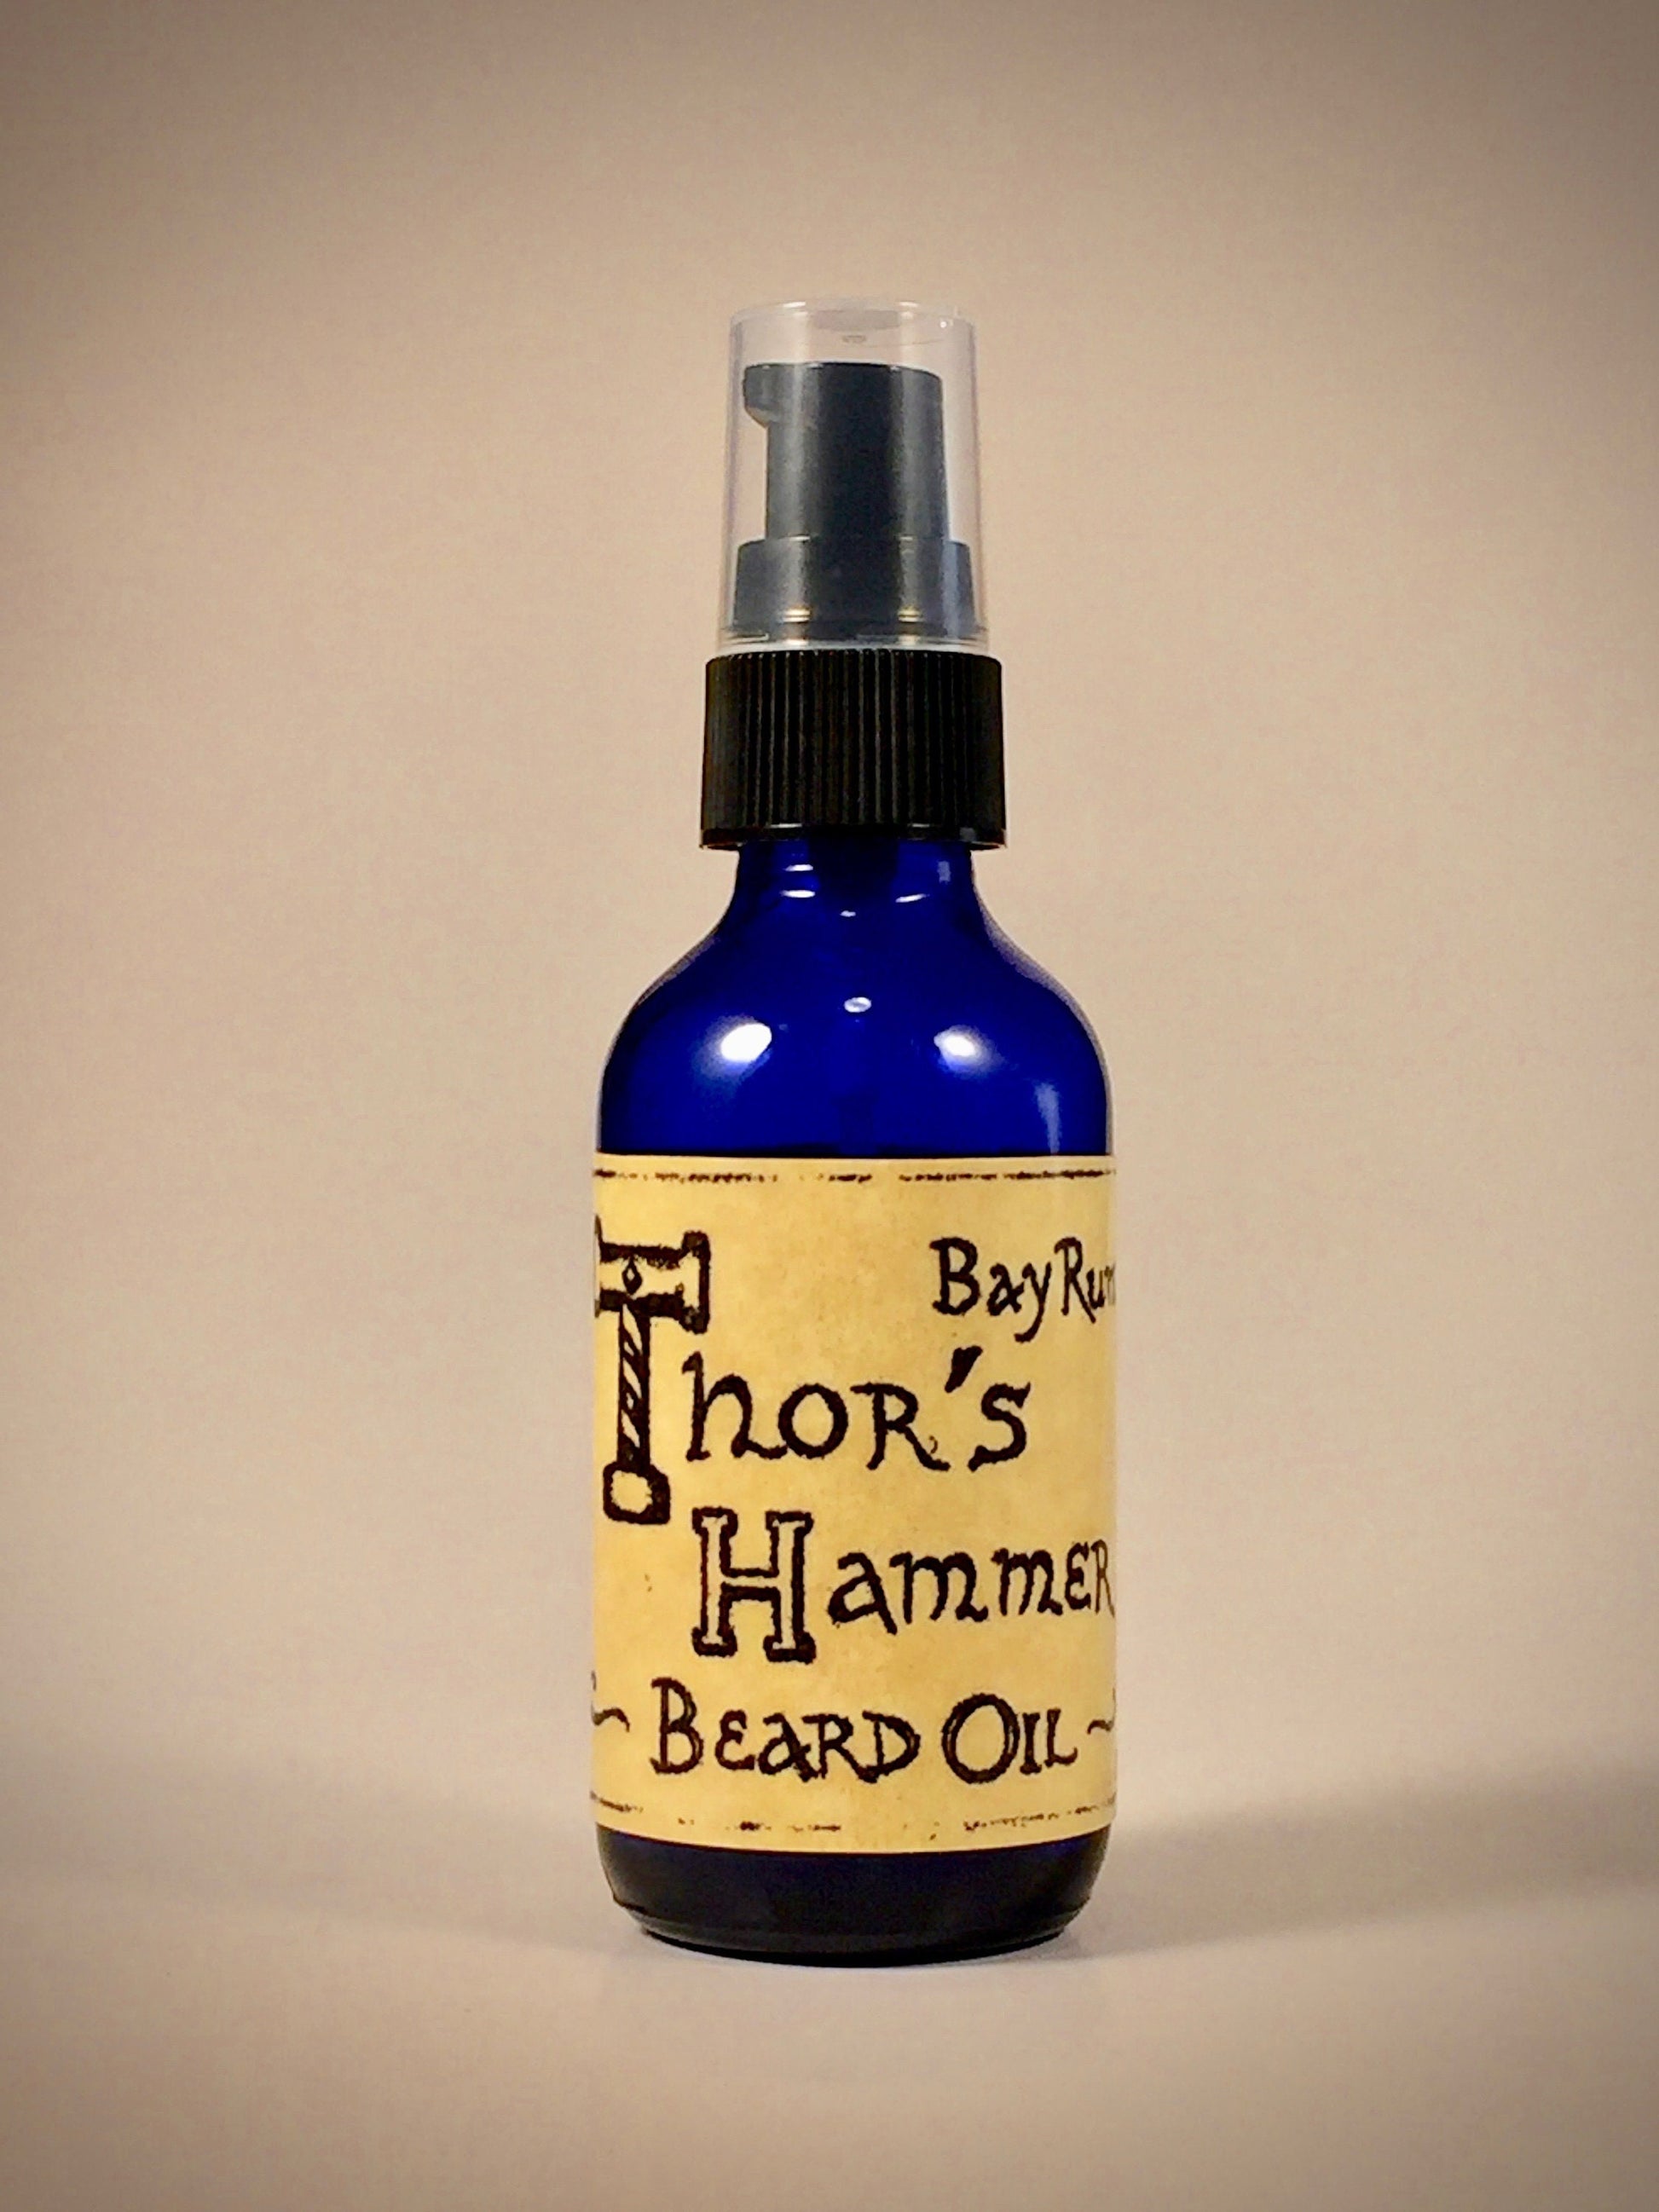 Thor's hammer bay rum beard oil